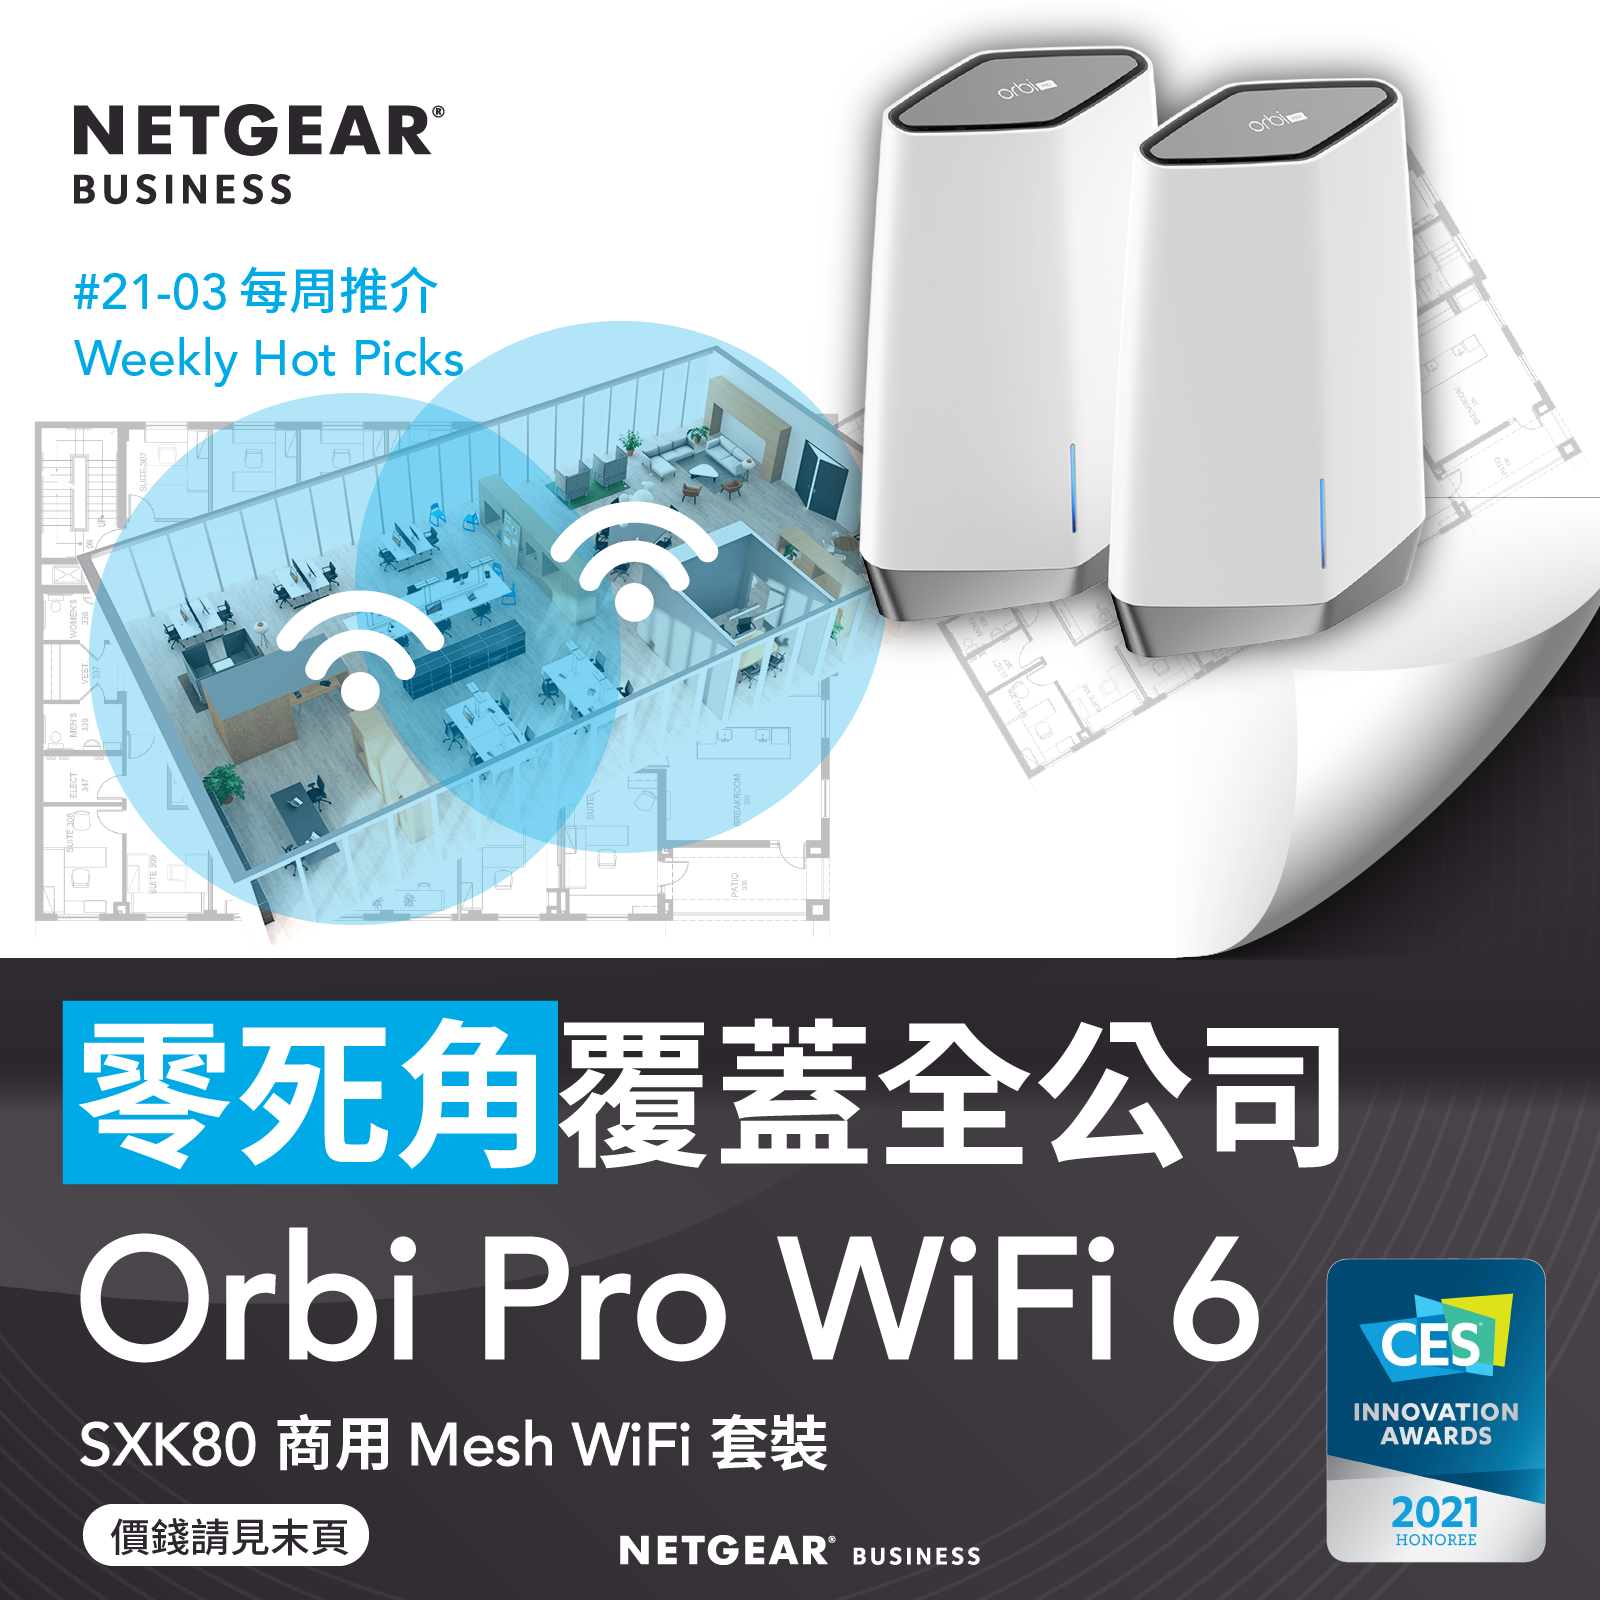 Netgear Orbi Pro WiFi 6 review